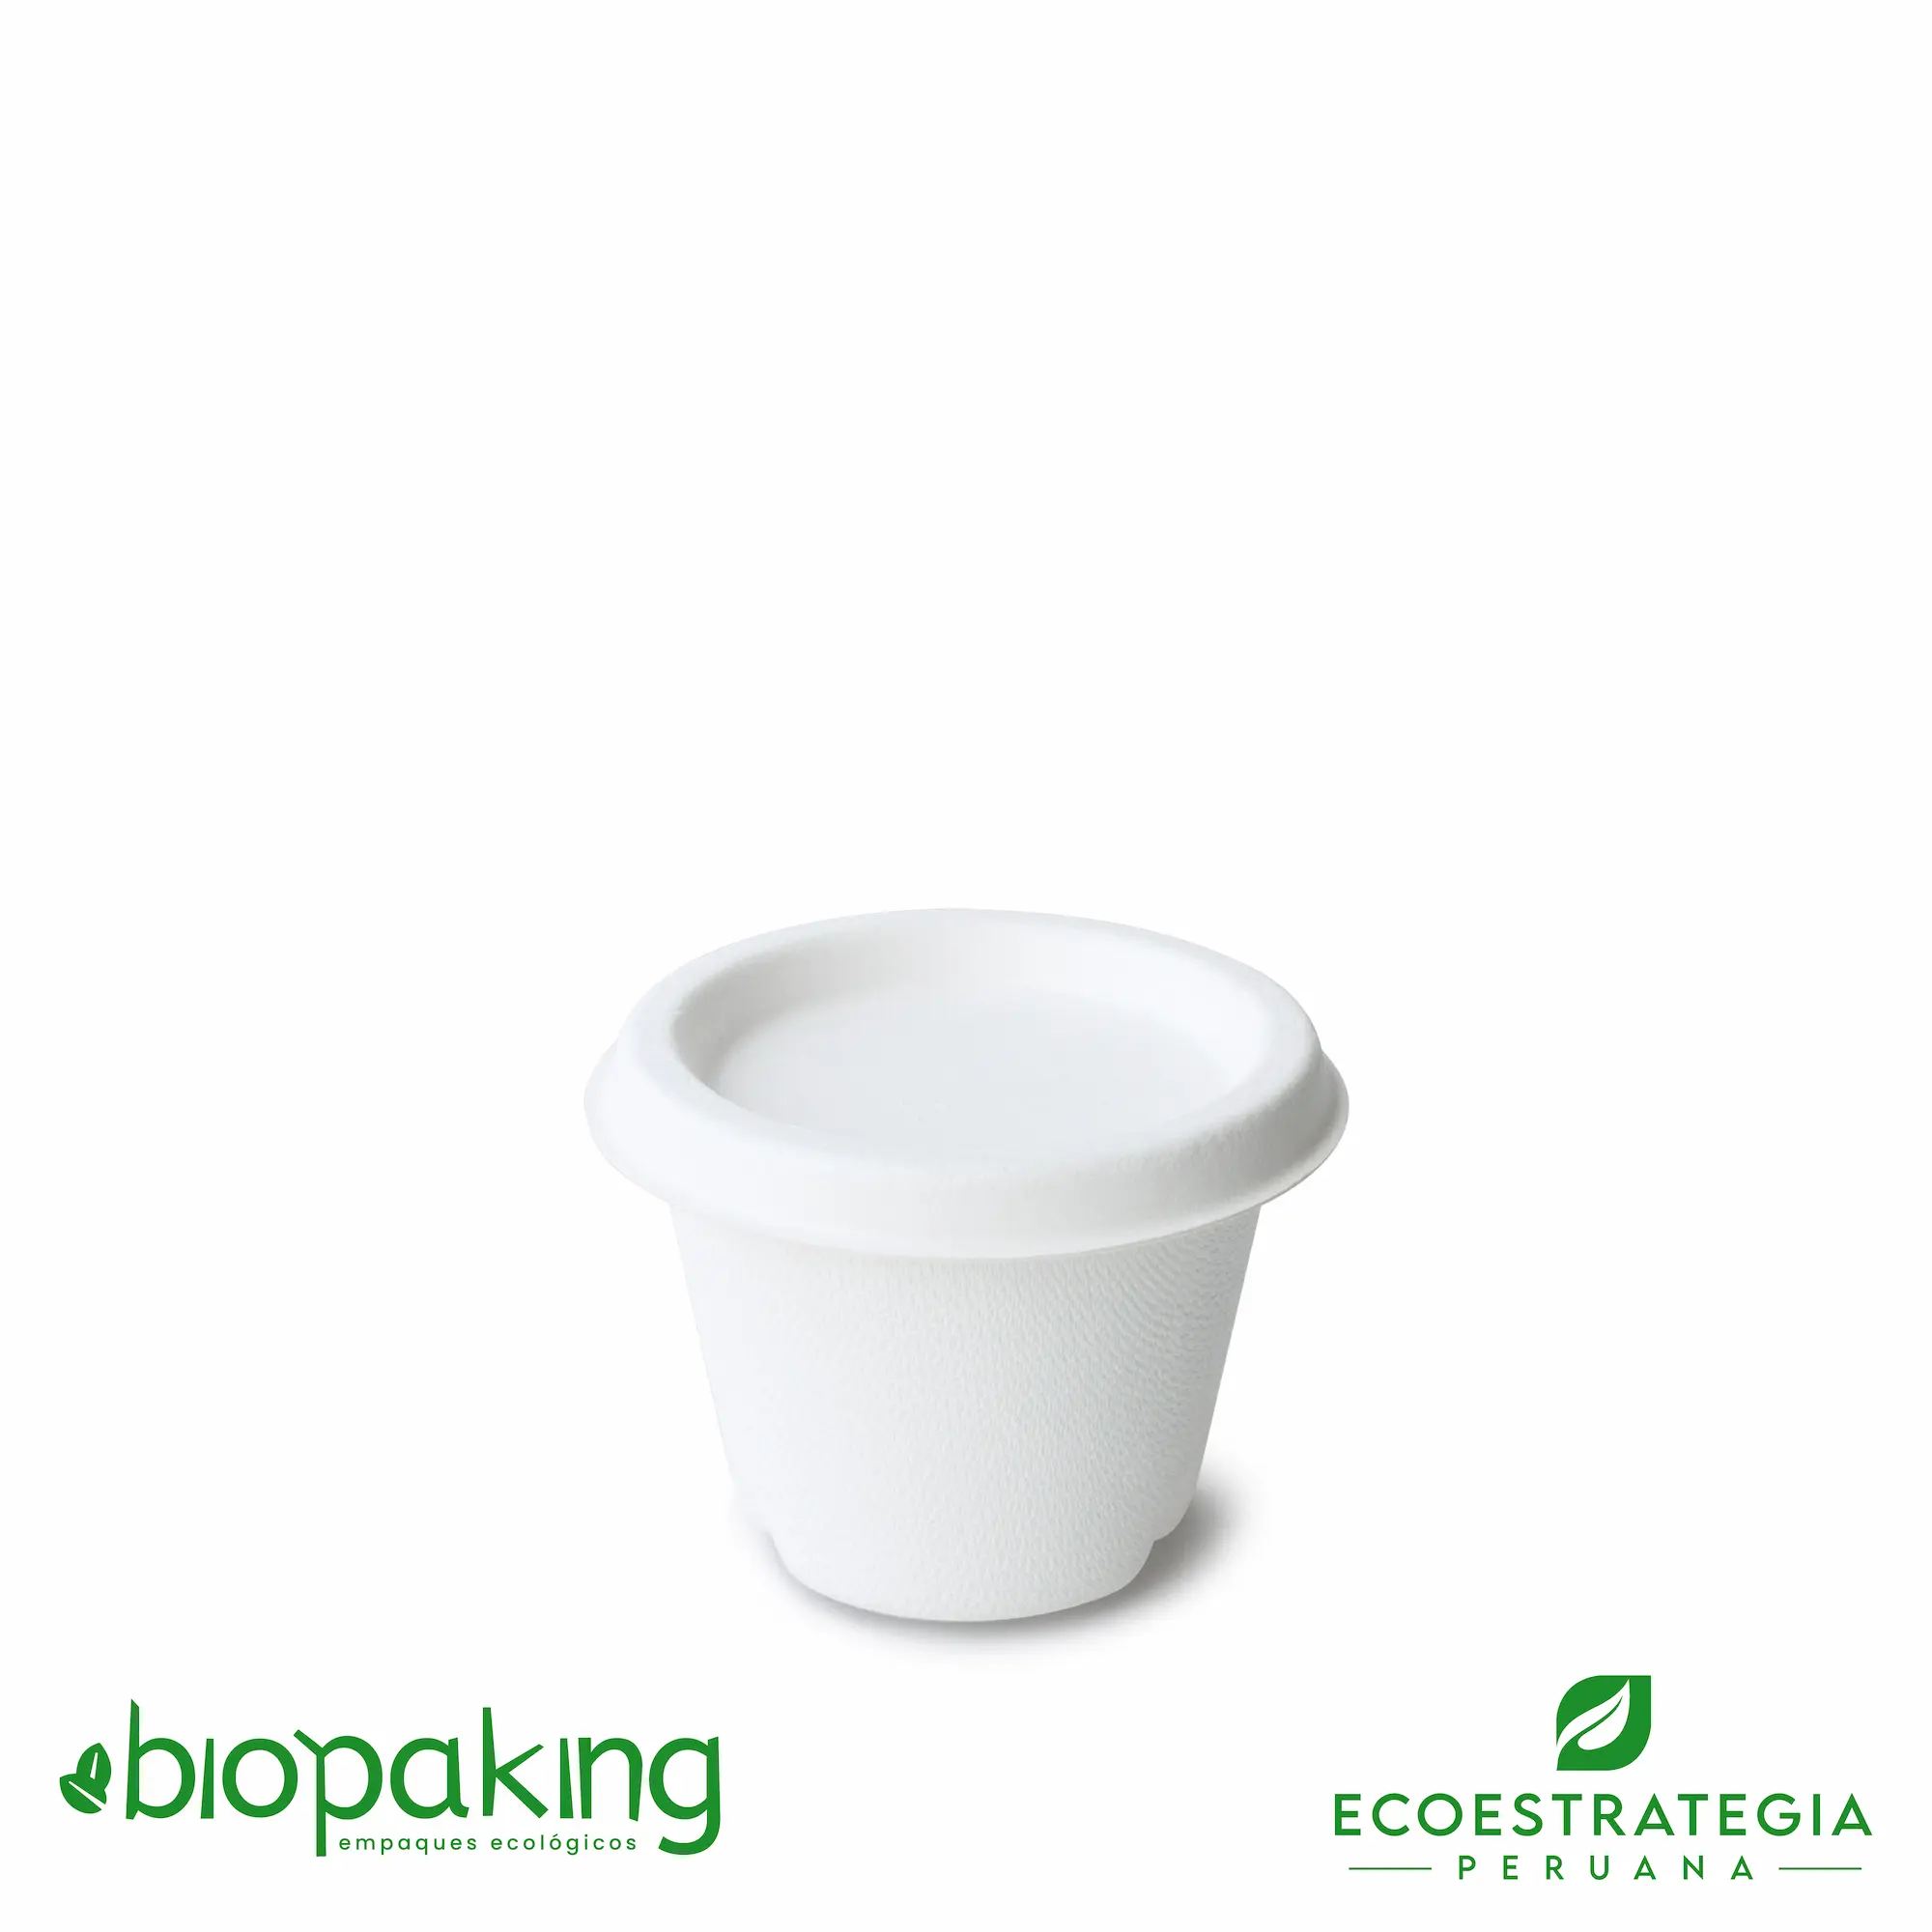 Este salsero de 4 oz es un producto de materiales biodegradables, hecho a base de fibra de caña de azúcar. Cotiza envases, empaques y pirotines para comidas